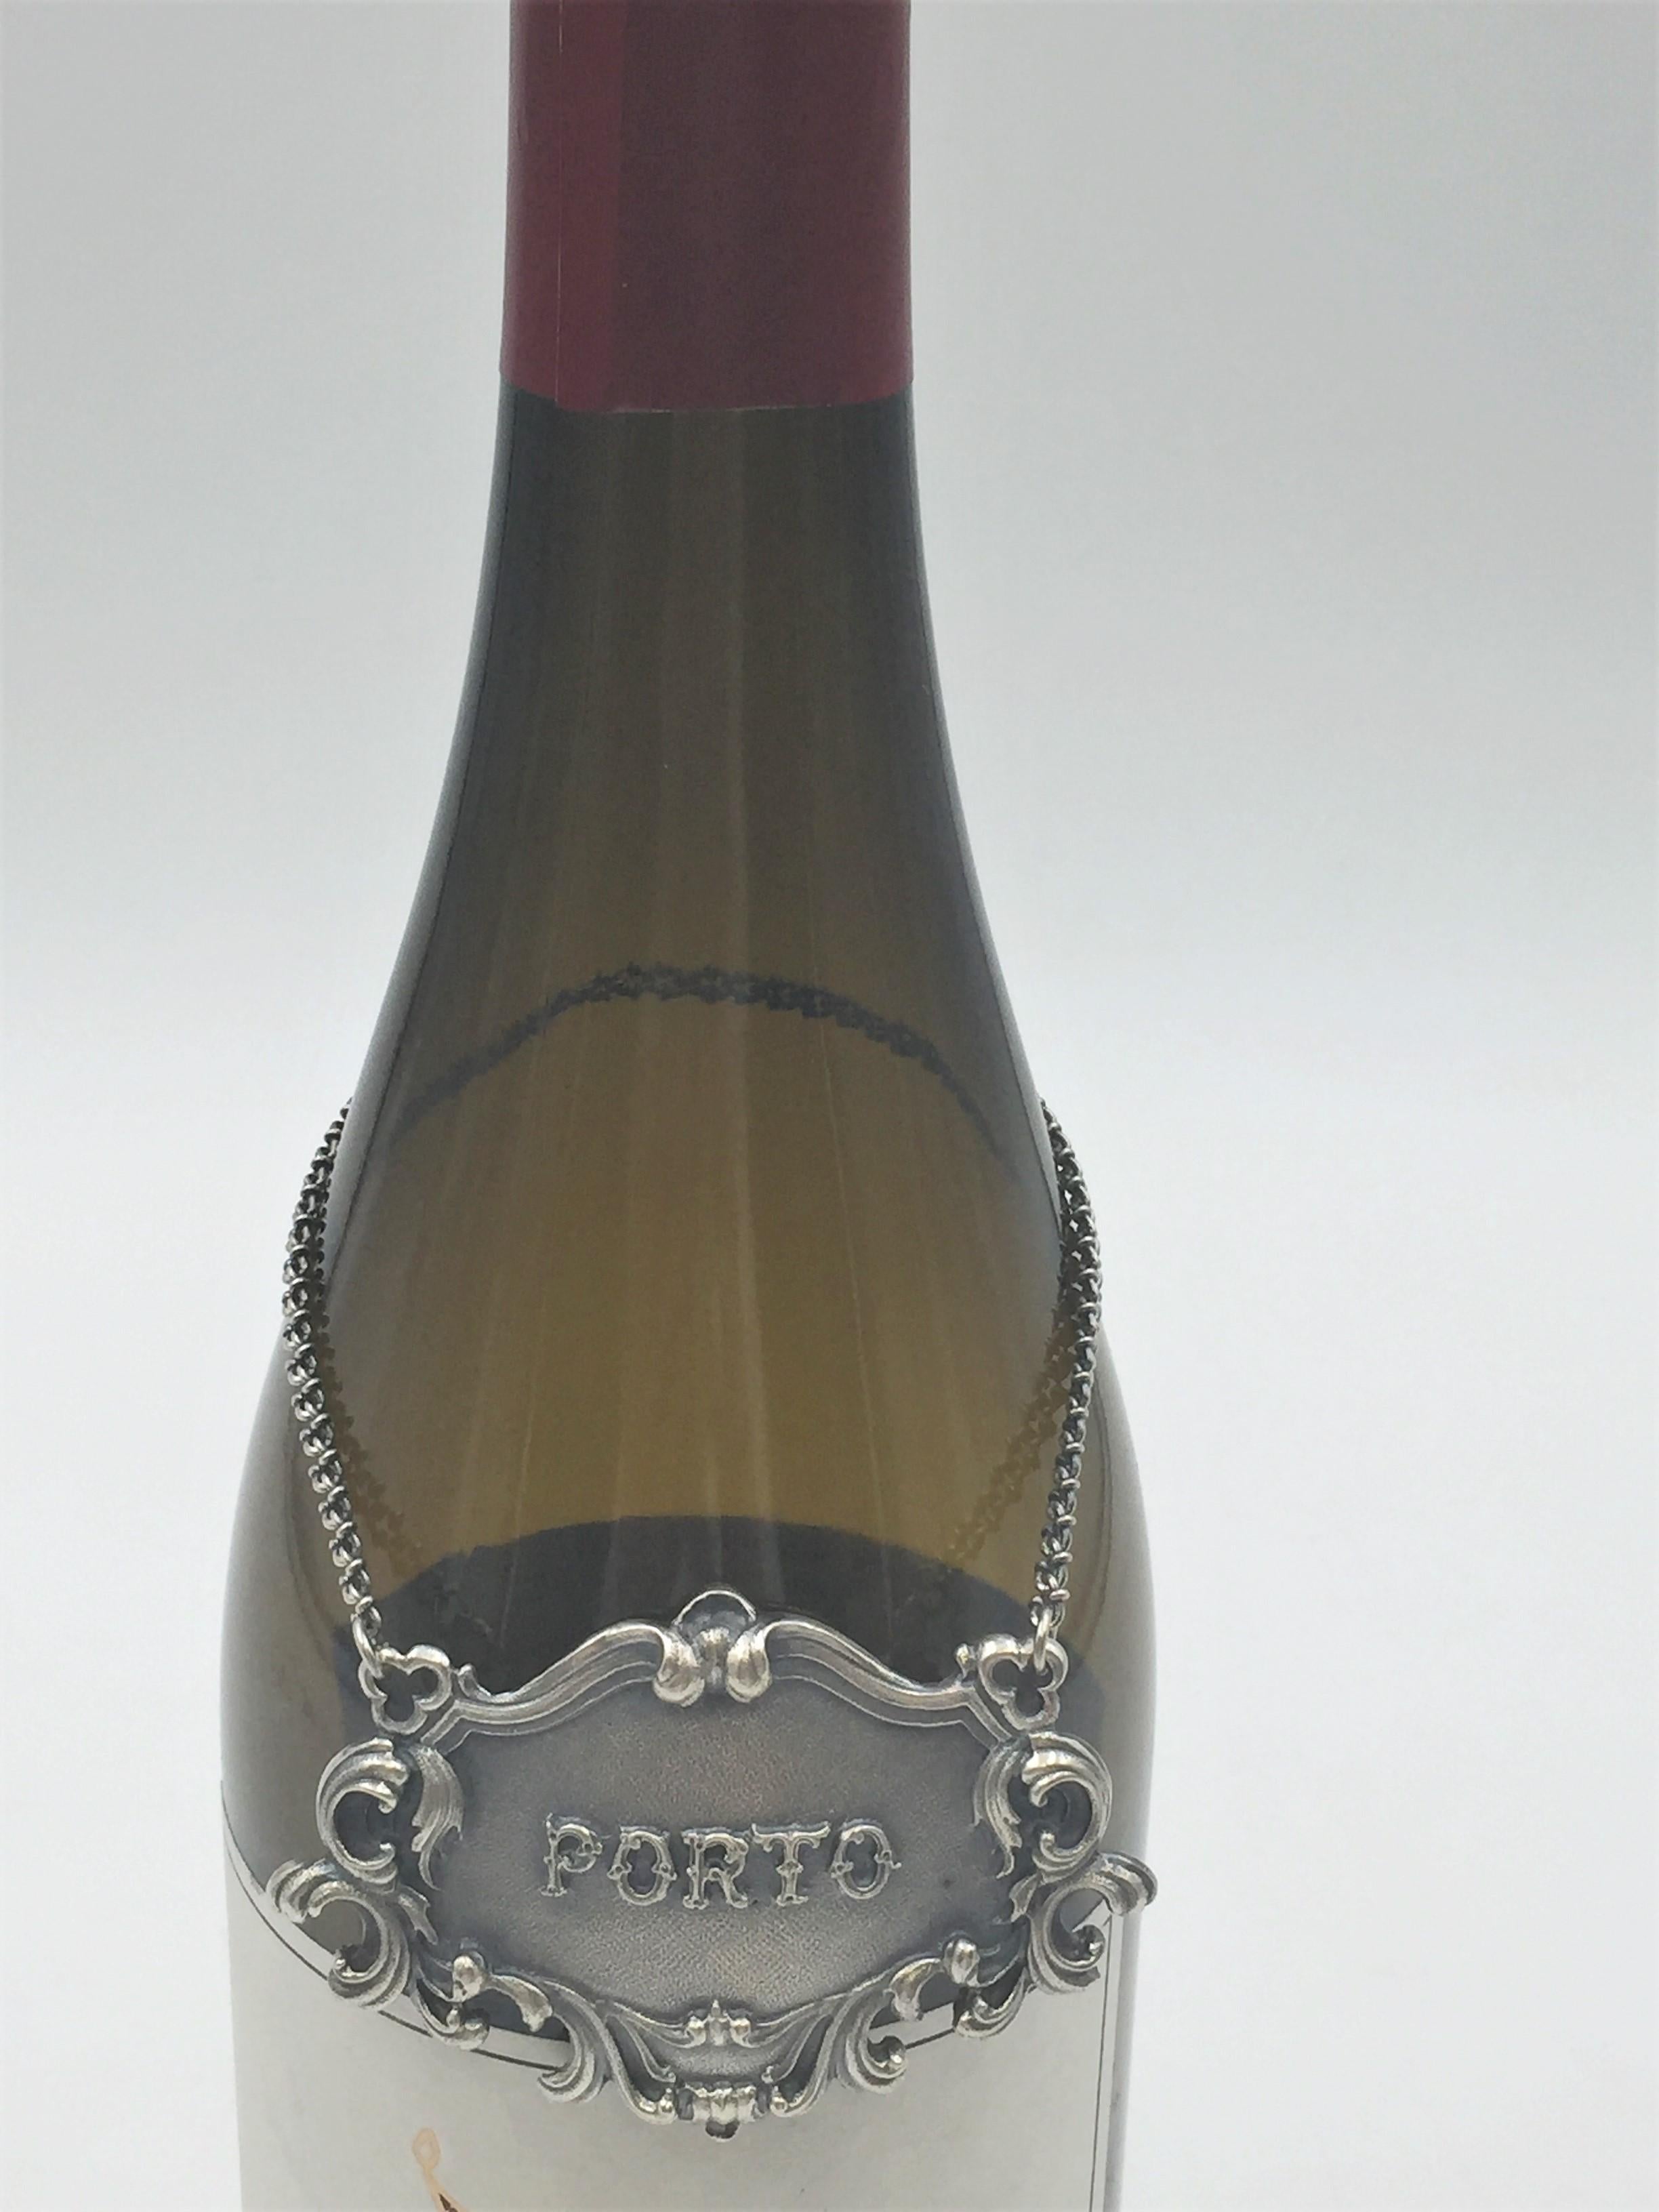 Seltenes Gianmaria Buccellati Label aus Sterlingsilber für einen Weinkrug. PORTO ist auf der Vorderseite in der Mitte eingeprägt.

Markierungen auf der Rückseite: Gianmaria Buccellati (Unterschrift und italienische Herstellermarke), ITALY, 925